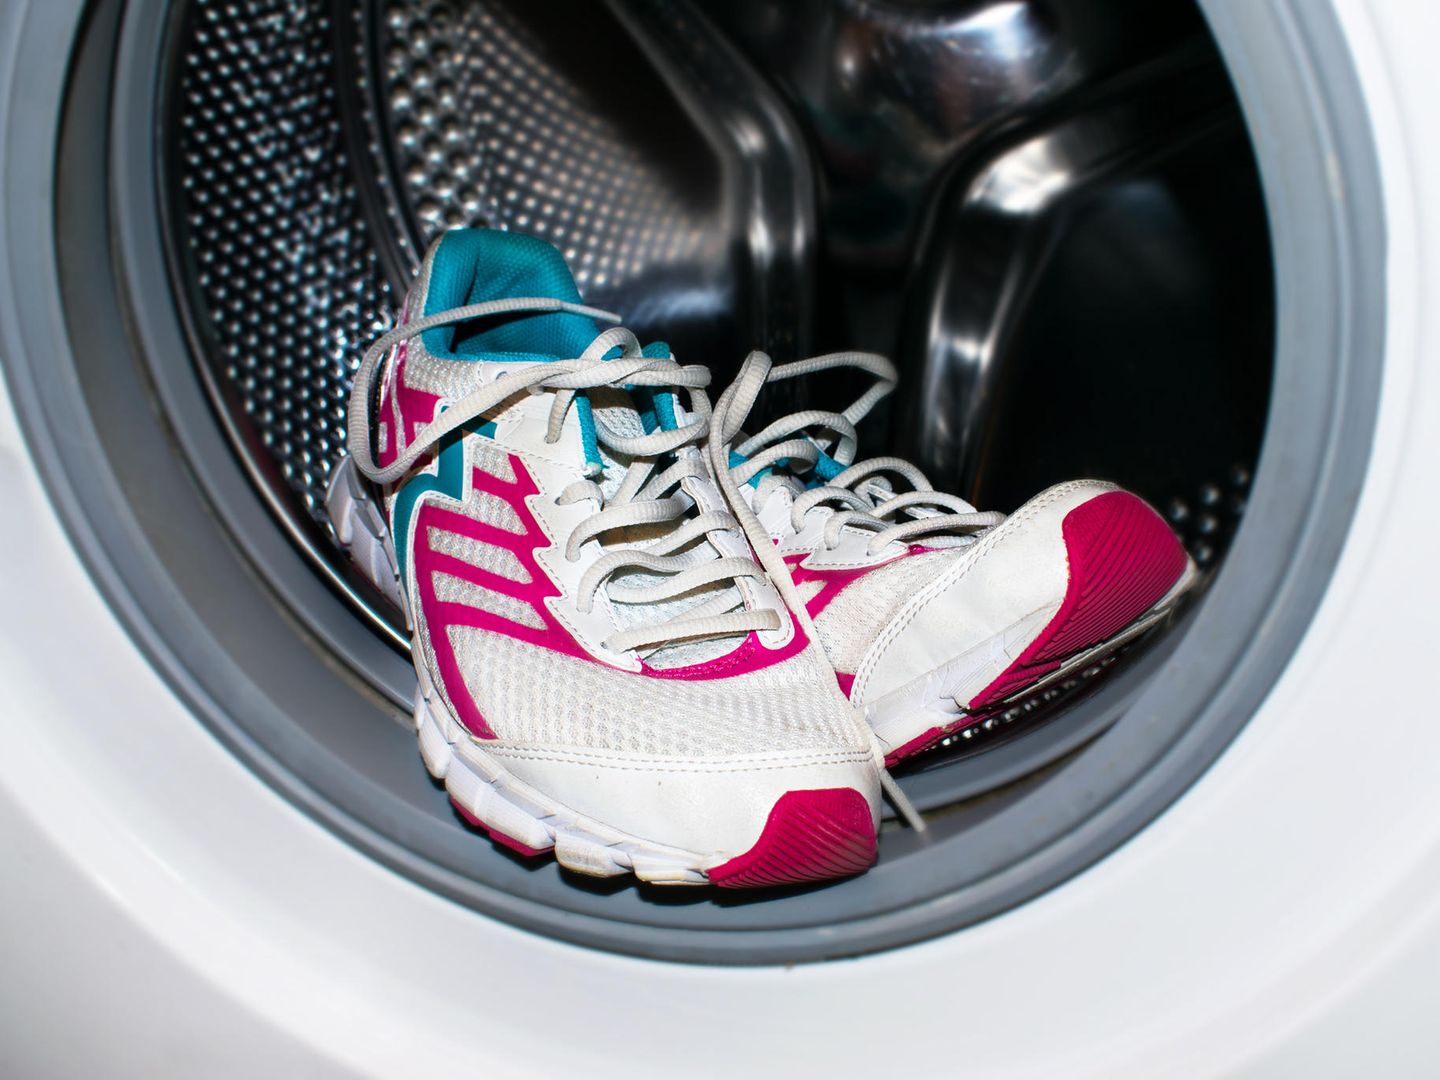 Schuhe waschen: So werden Schuhe wieder richtig sauber